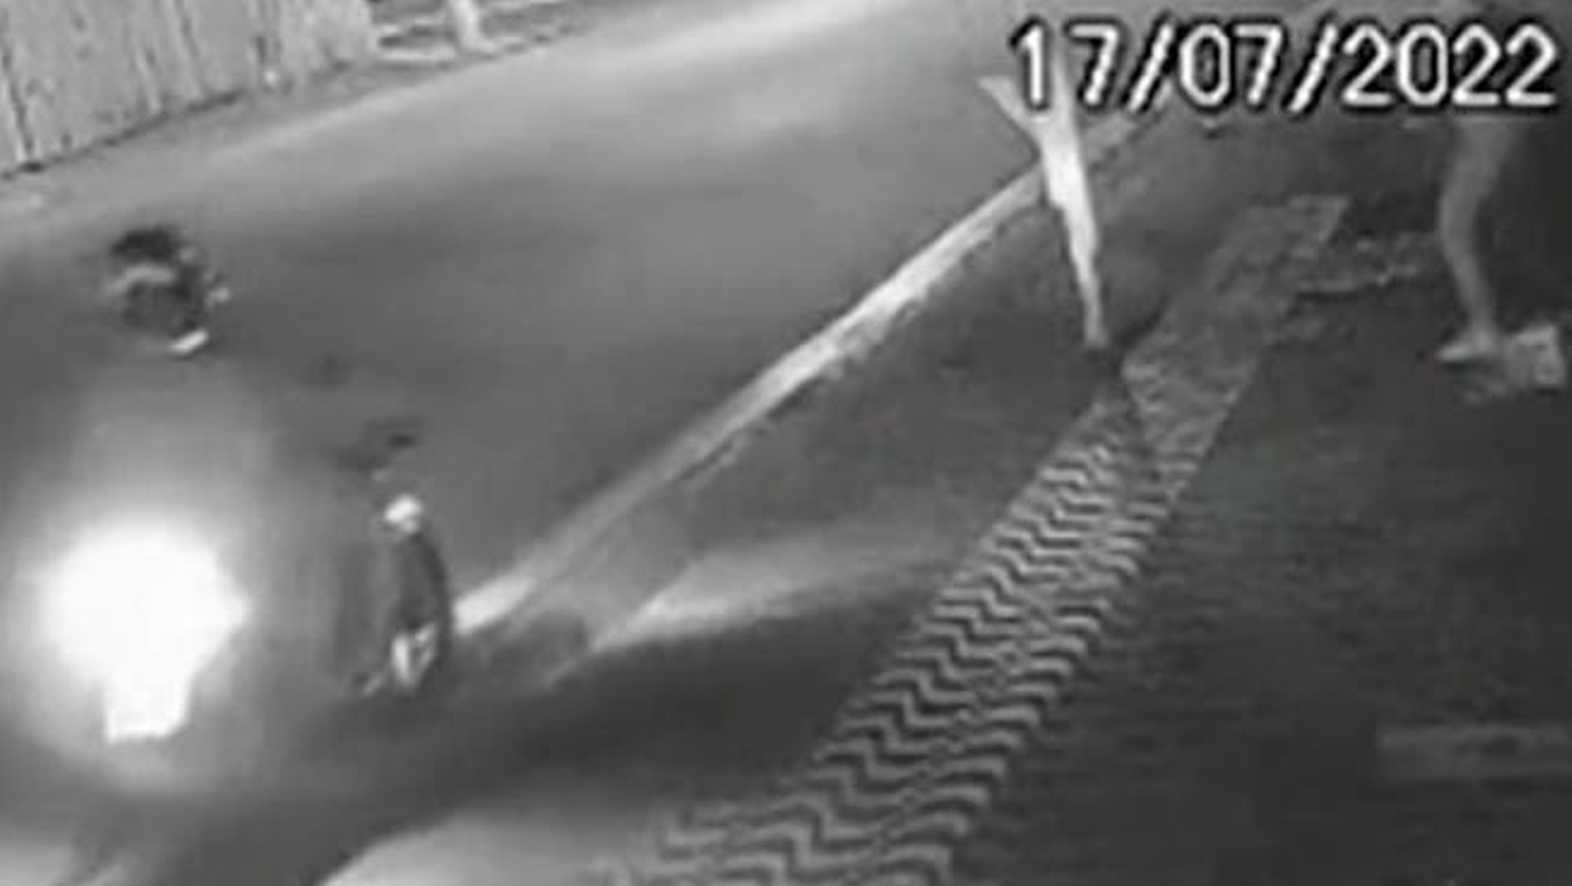 Vídeo: Policial grávida reage a assalto, dispara e mata bandido